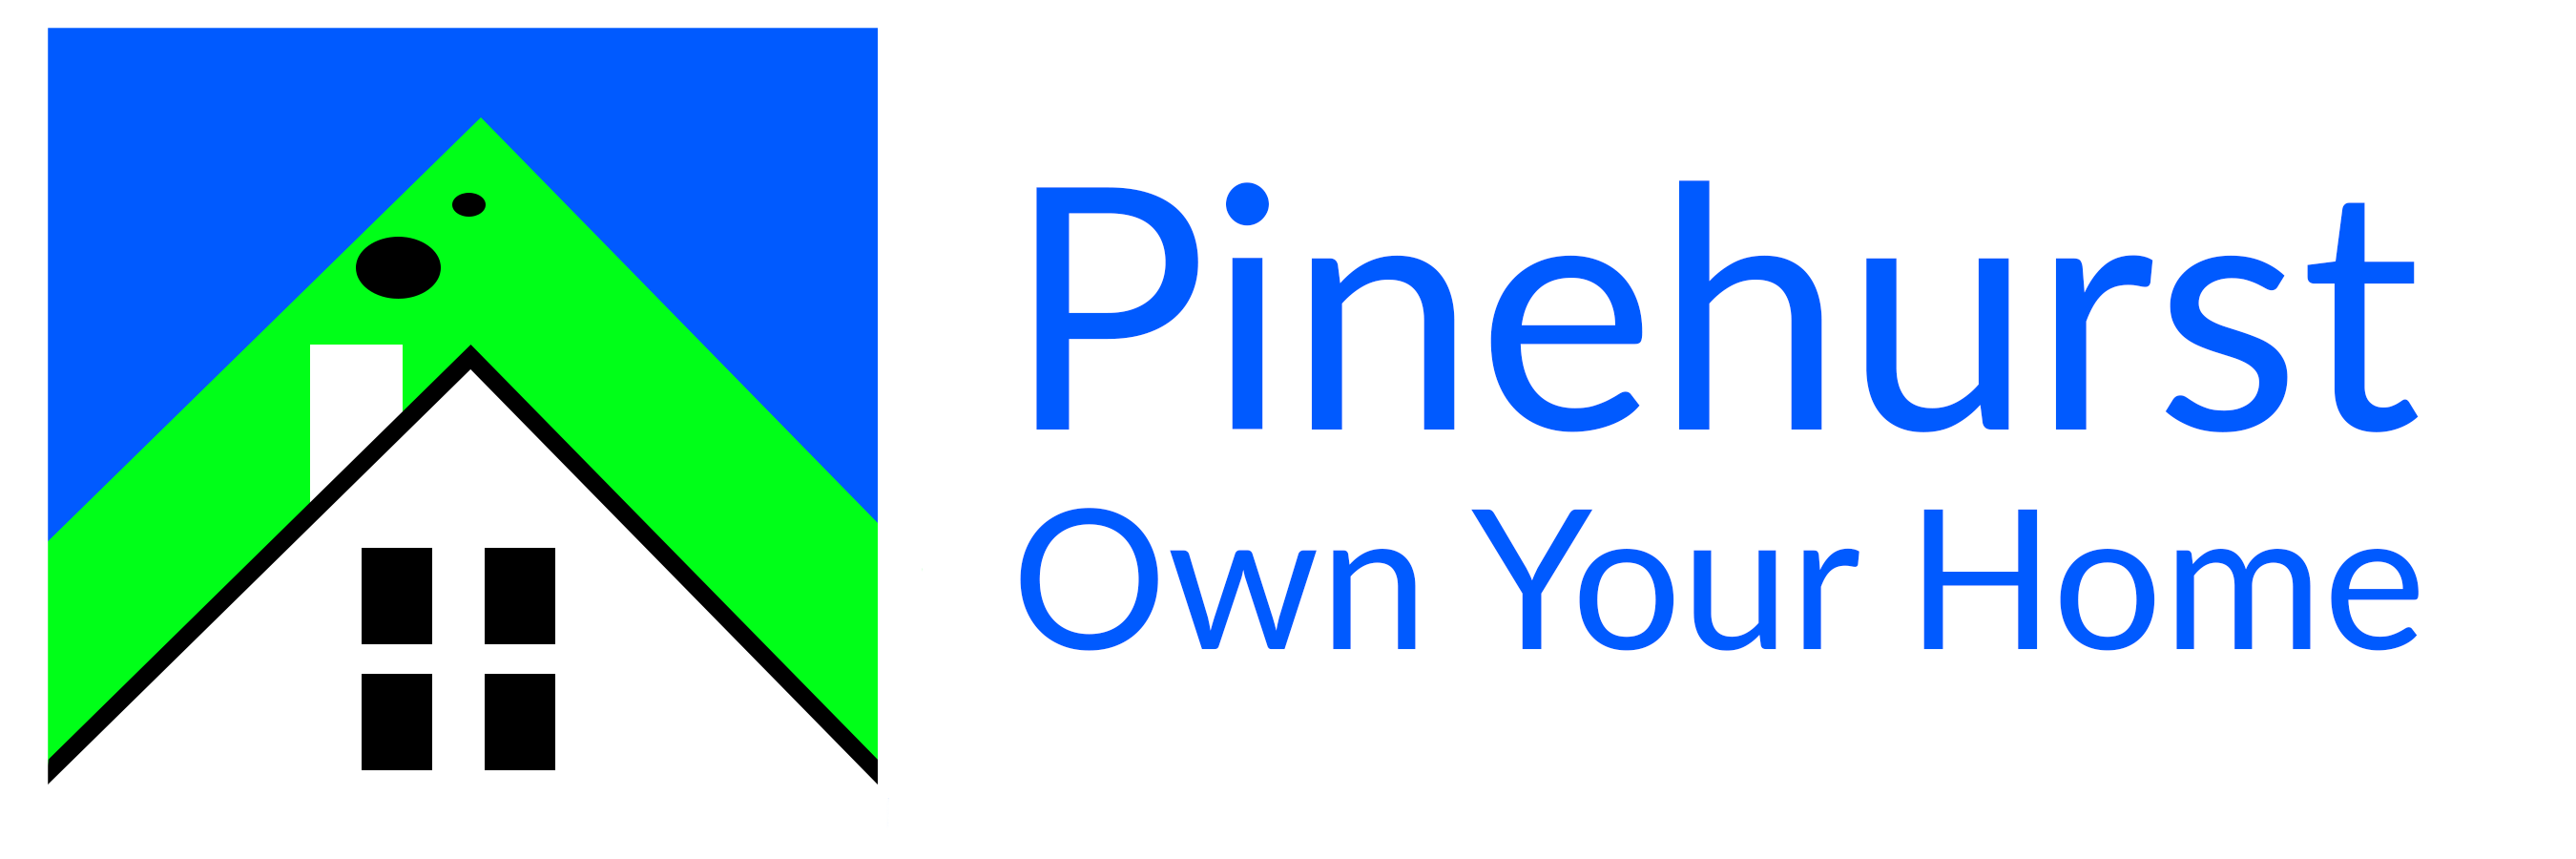 Pinehurst Own Your Home